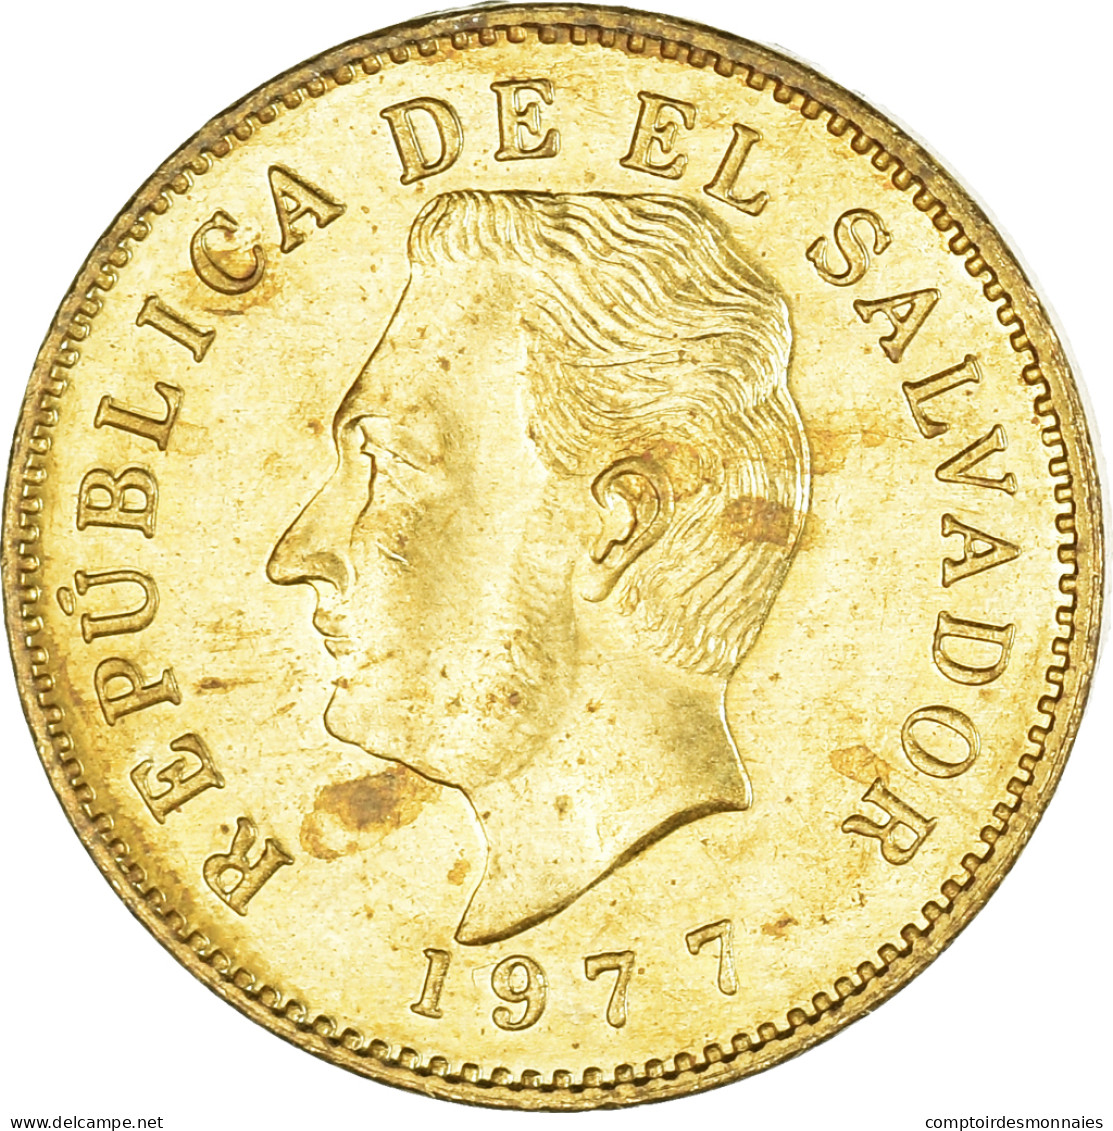 Monnaie, Salvador, Centavo, 1977 - Salvador